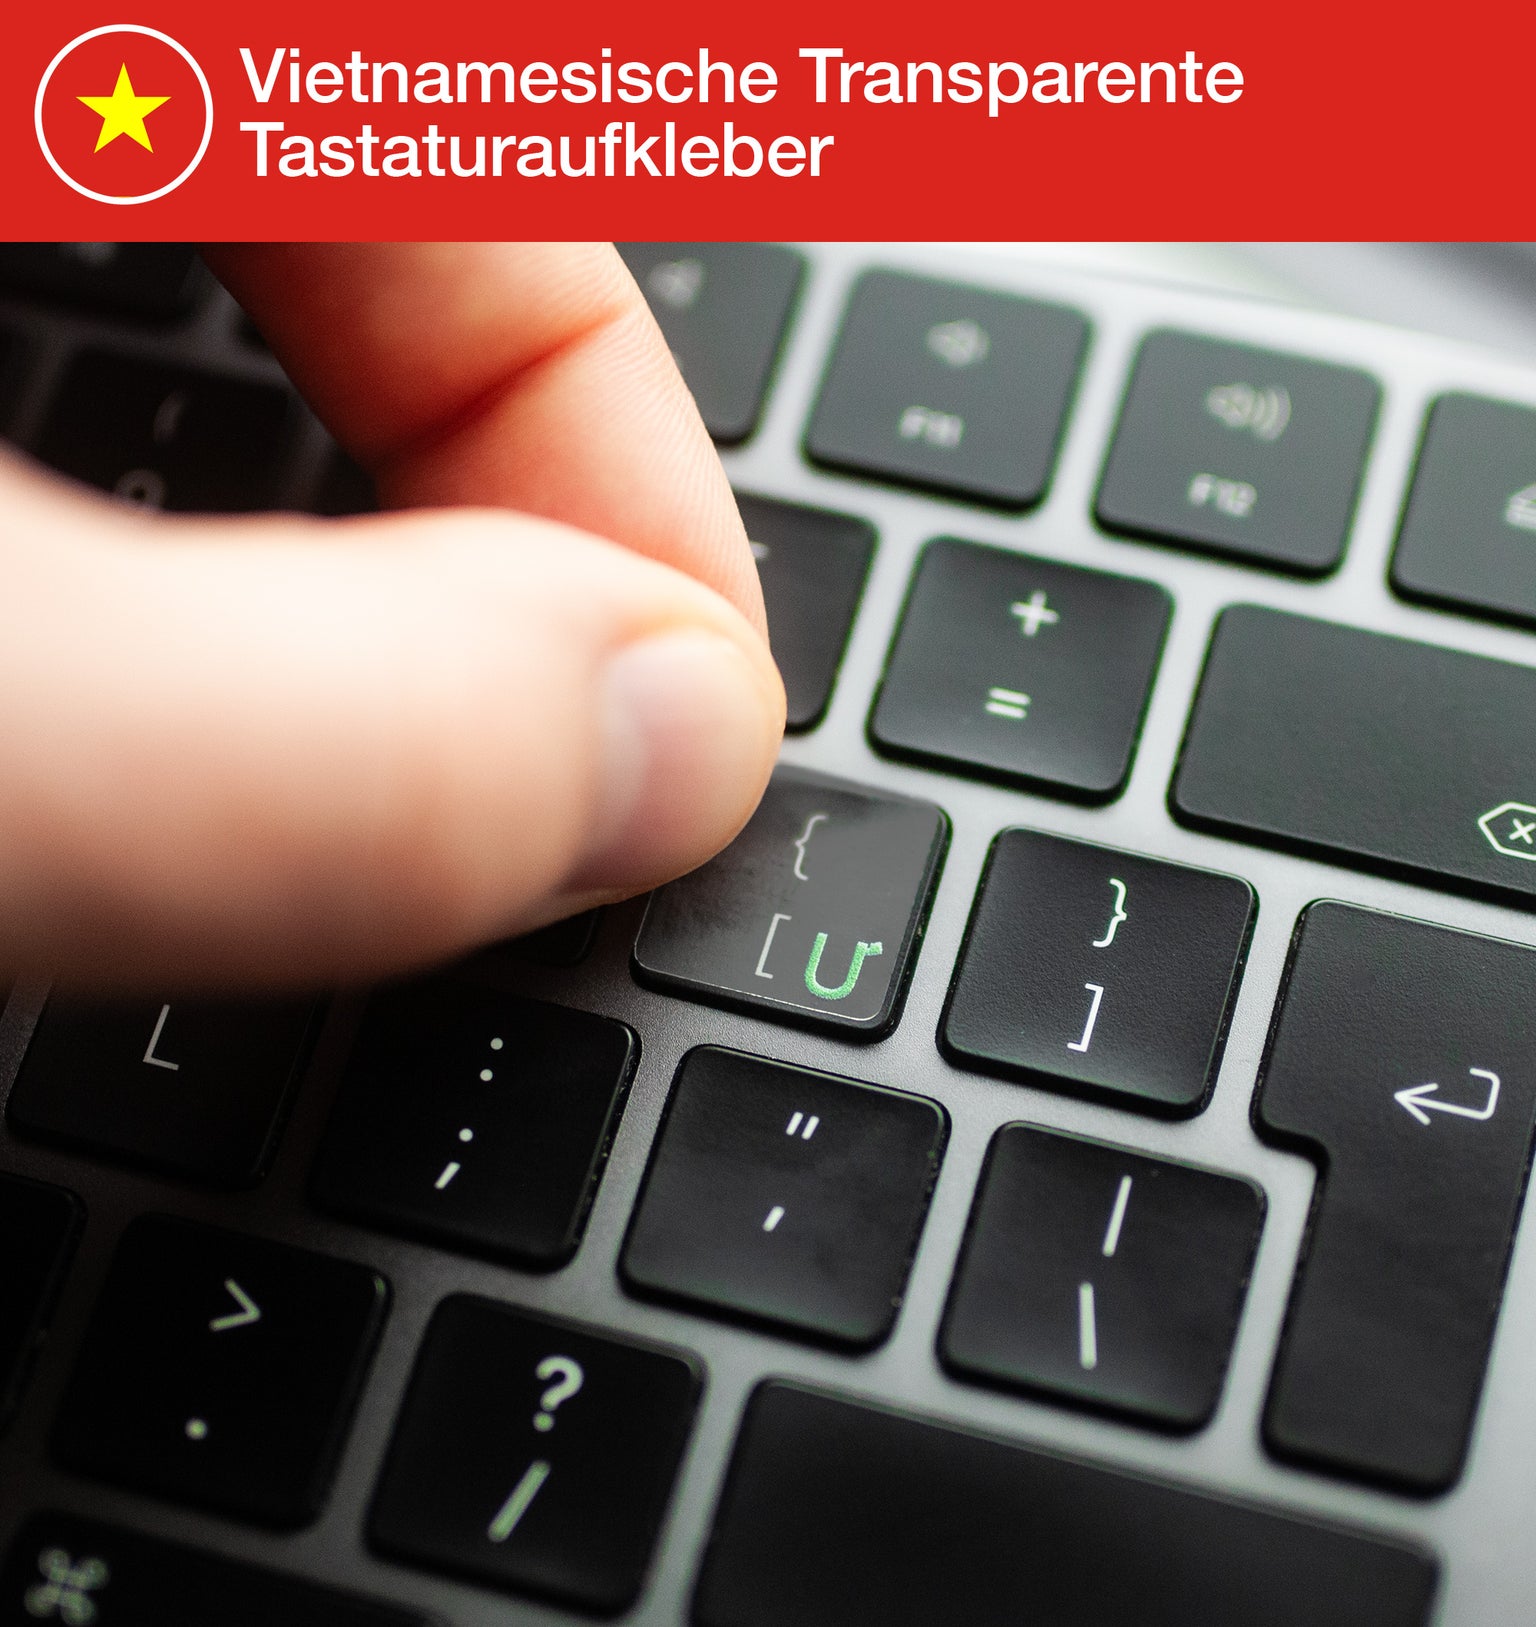 Vietnamesische Transparente Tastaturaufkleber